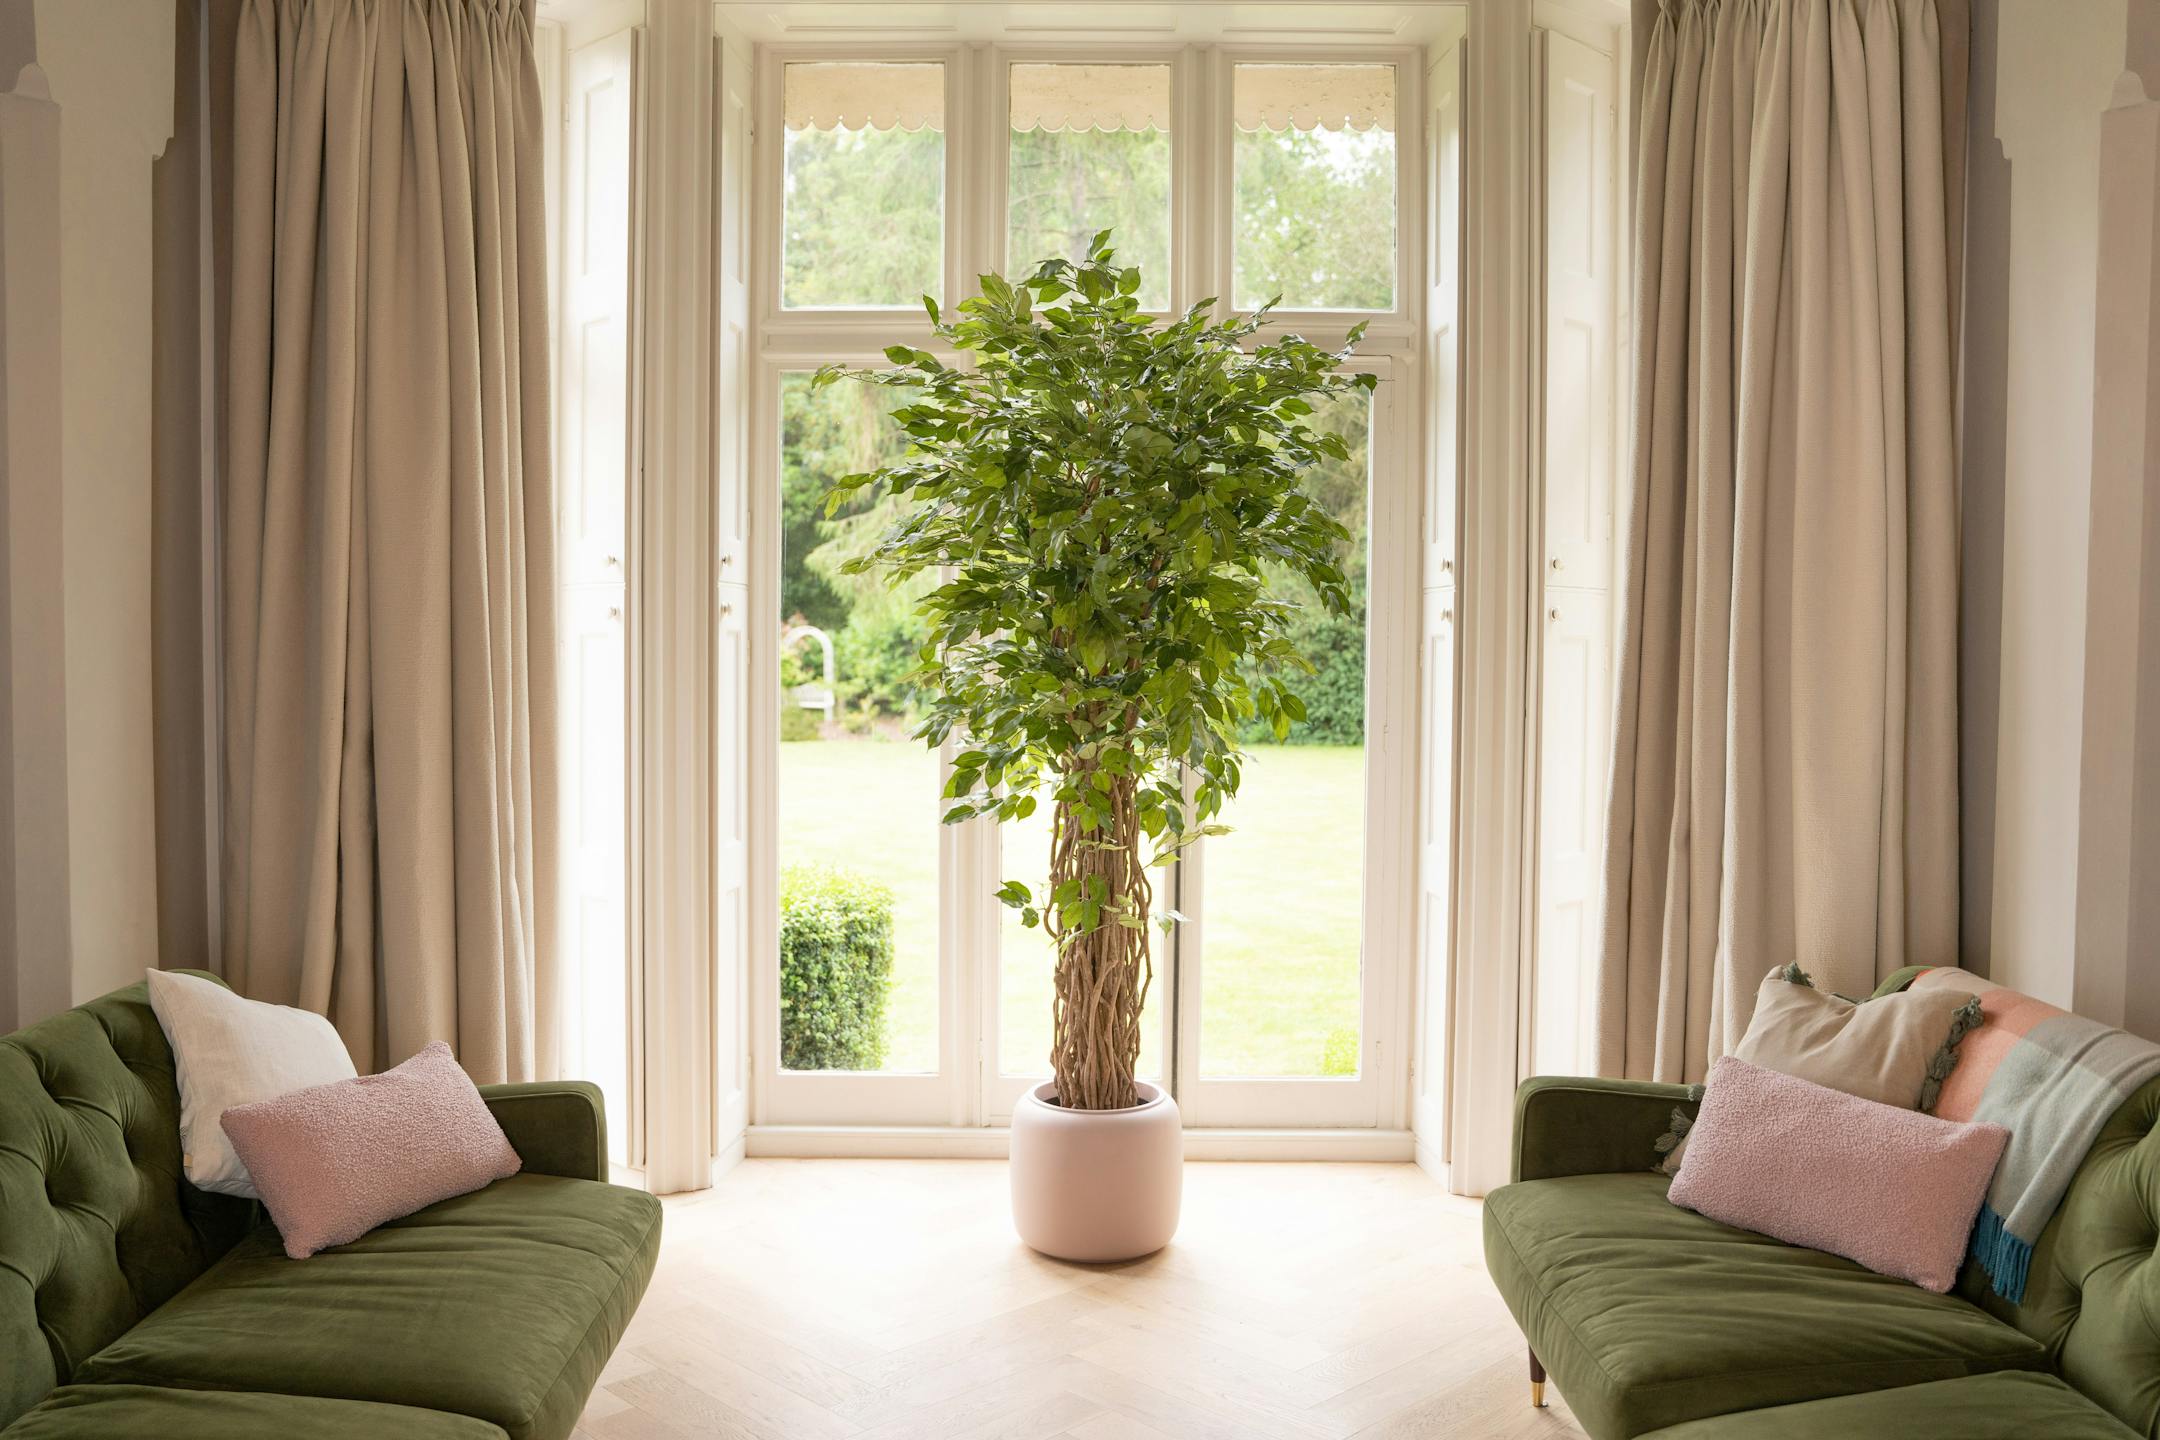 Artificial ficus benjamina liana tree in large window